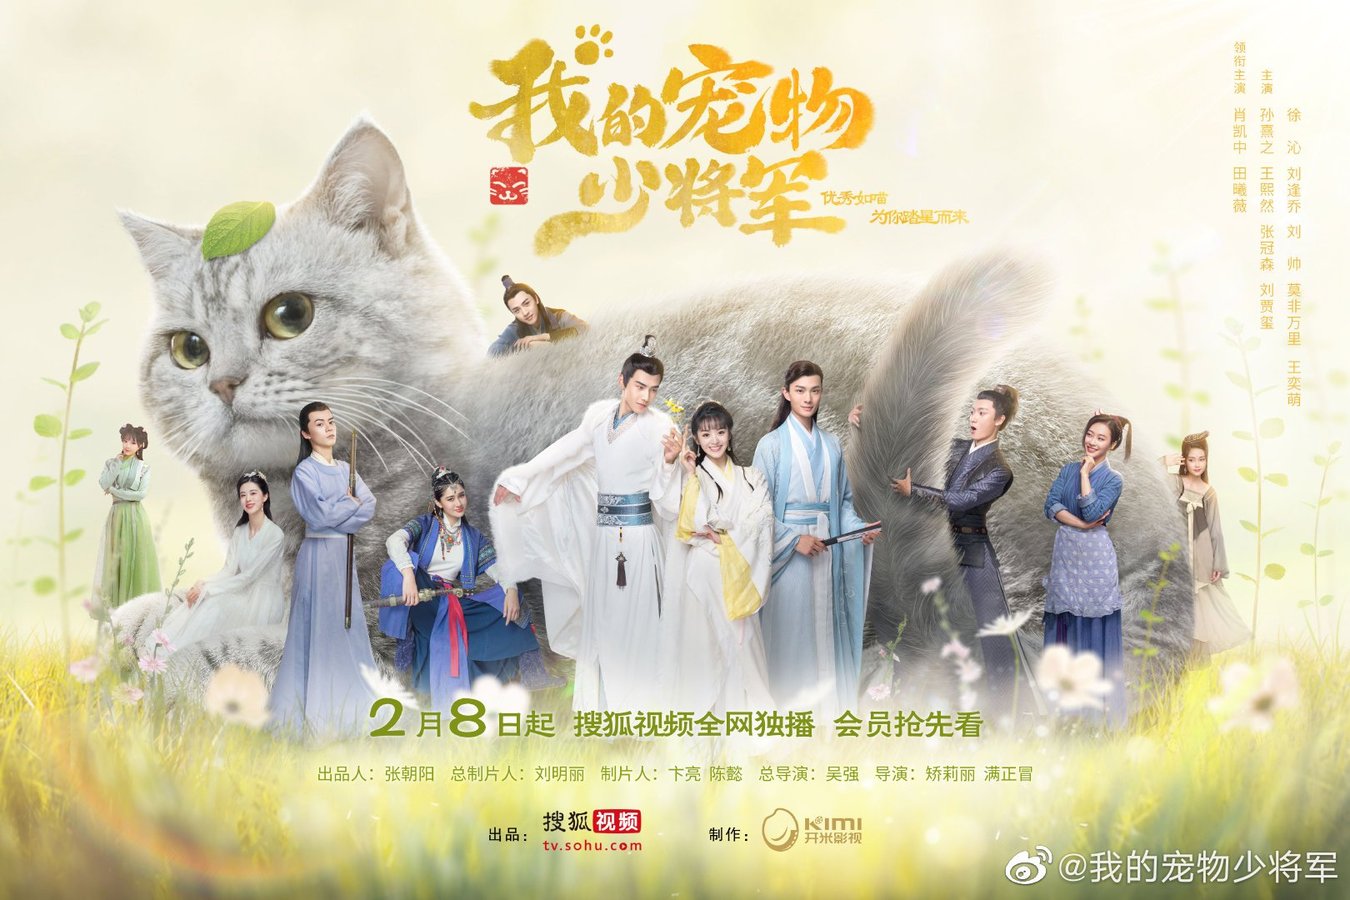 ดูซีรี่ย์จีน Be My Cat (2021) วุ่นรักองค์ชายแมวเหมียว พากย์ไทย